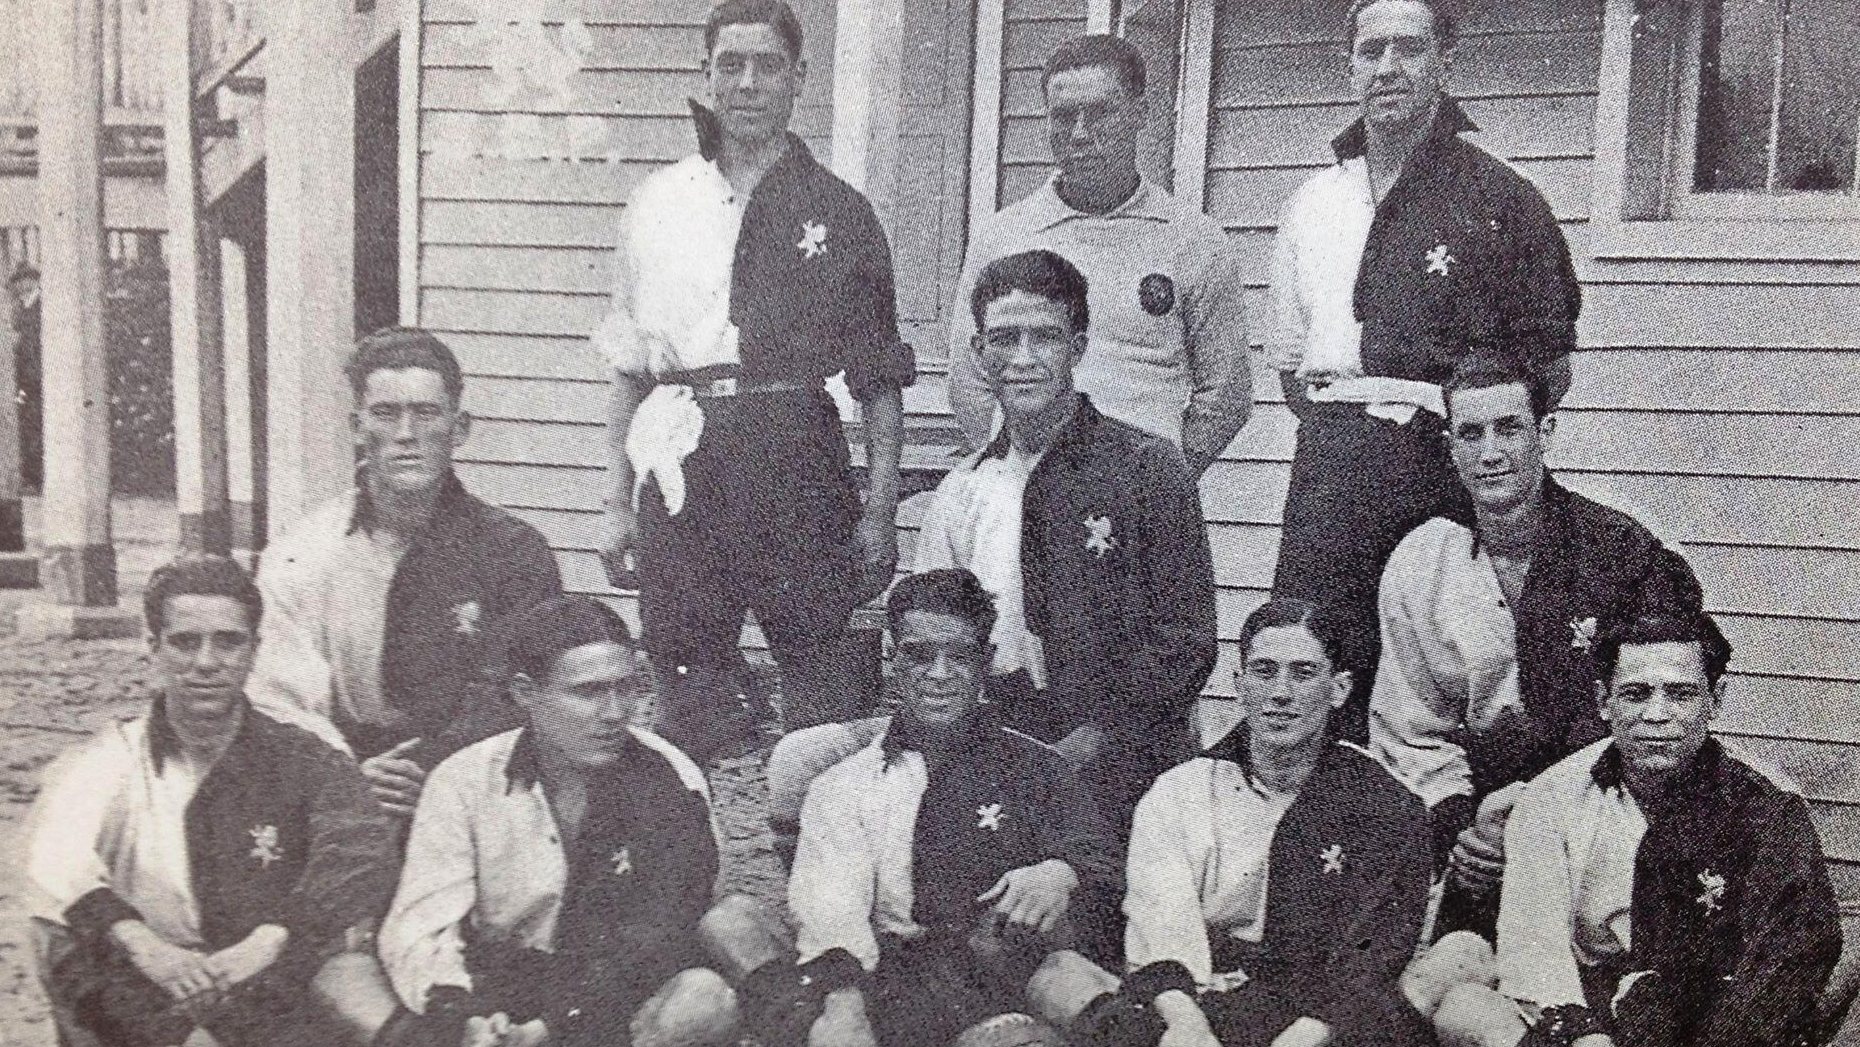 Francisco Stromp, Jorge Vieira ou Jaime Gonçalves foram alguns dos jogadores que ganharam o Campeonato de Portugal pelo Sporting em 1922/22. Esta quarta-feira, o título pode passar a Campeonato Nacional, Taça de Portugal ou ficar na mesma